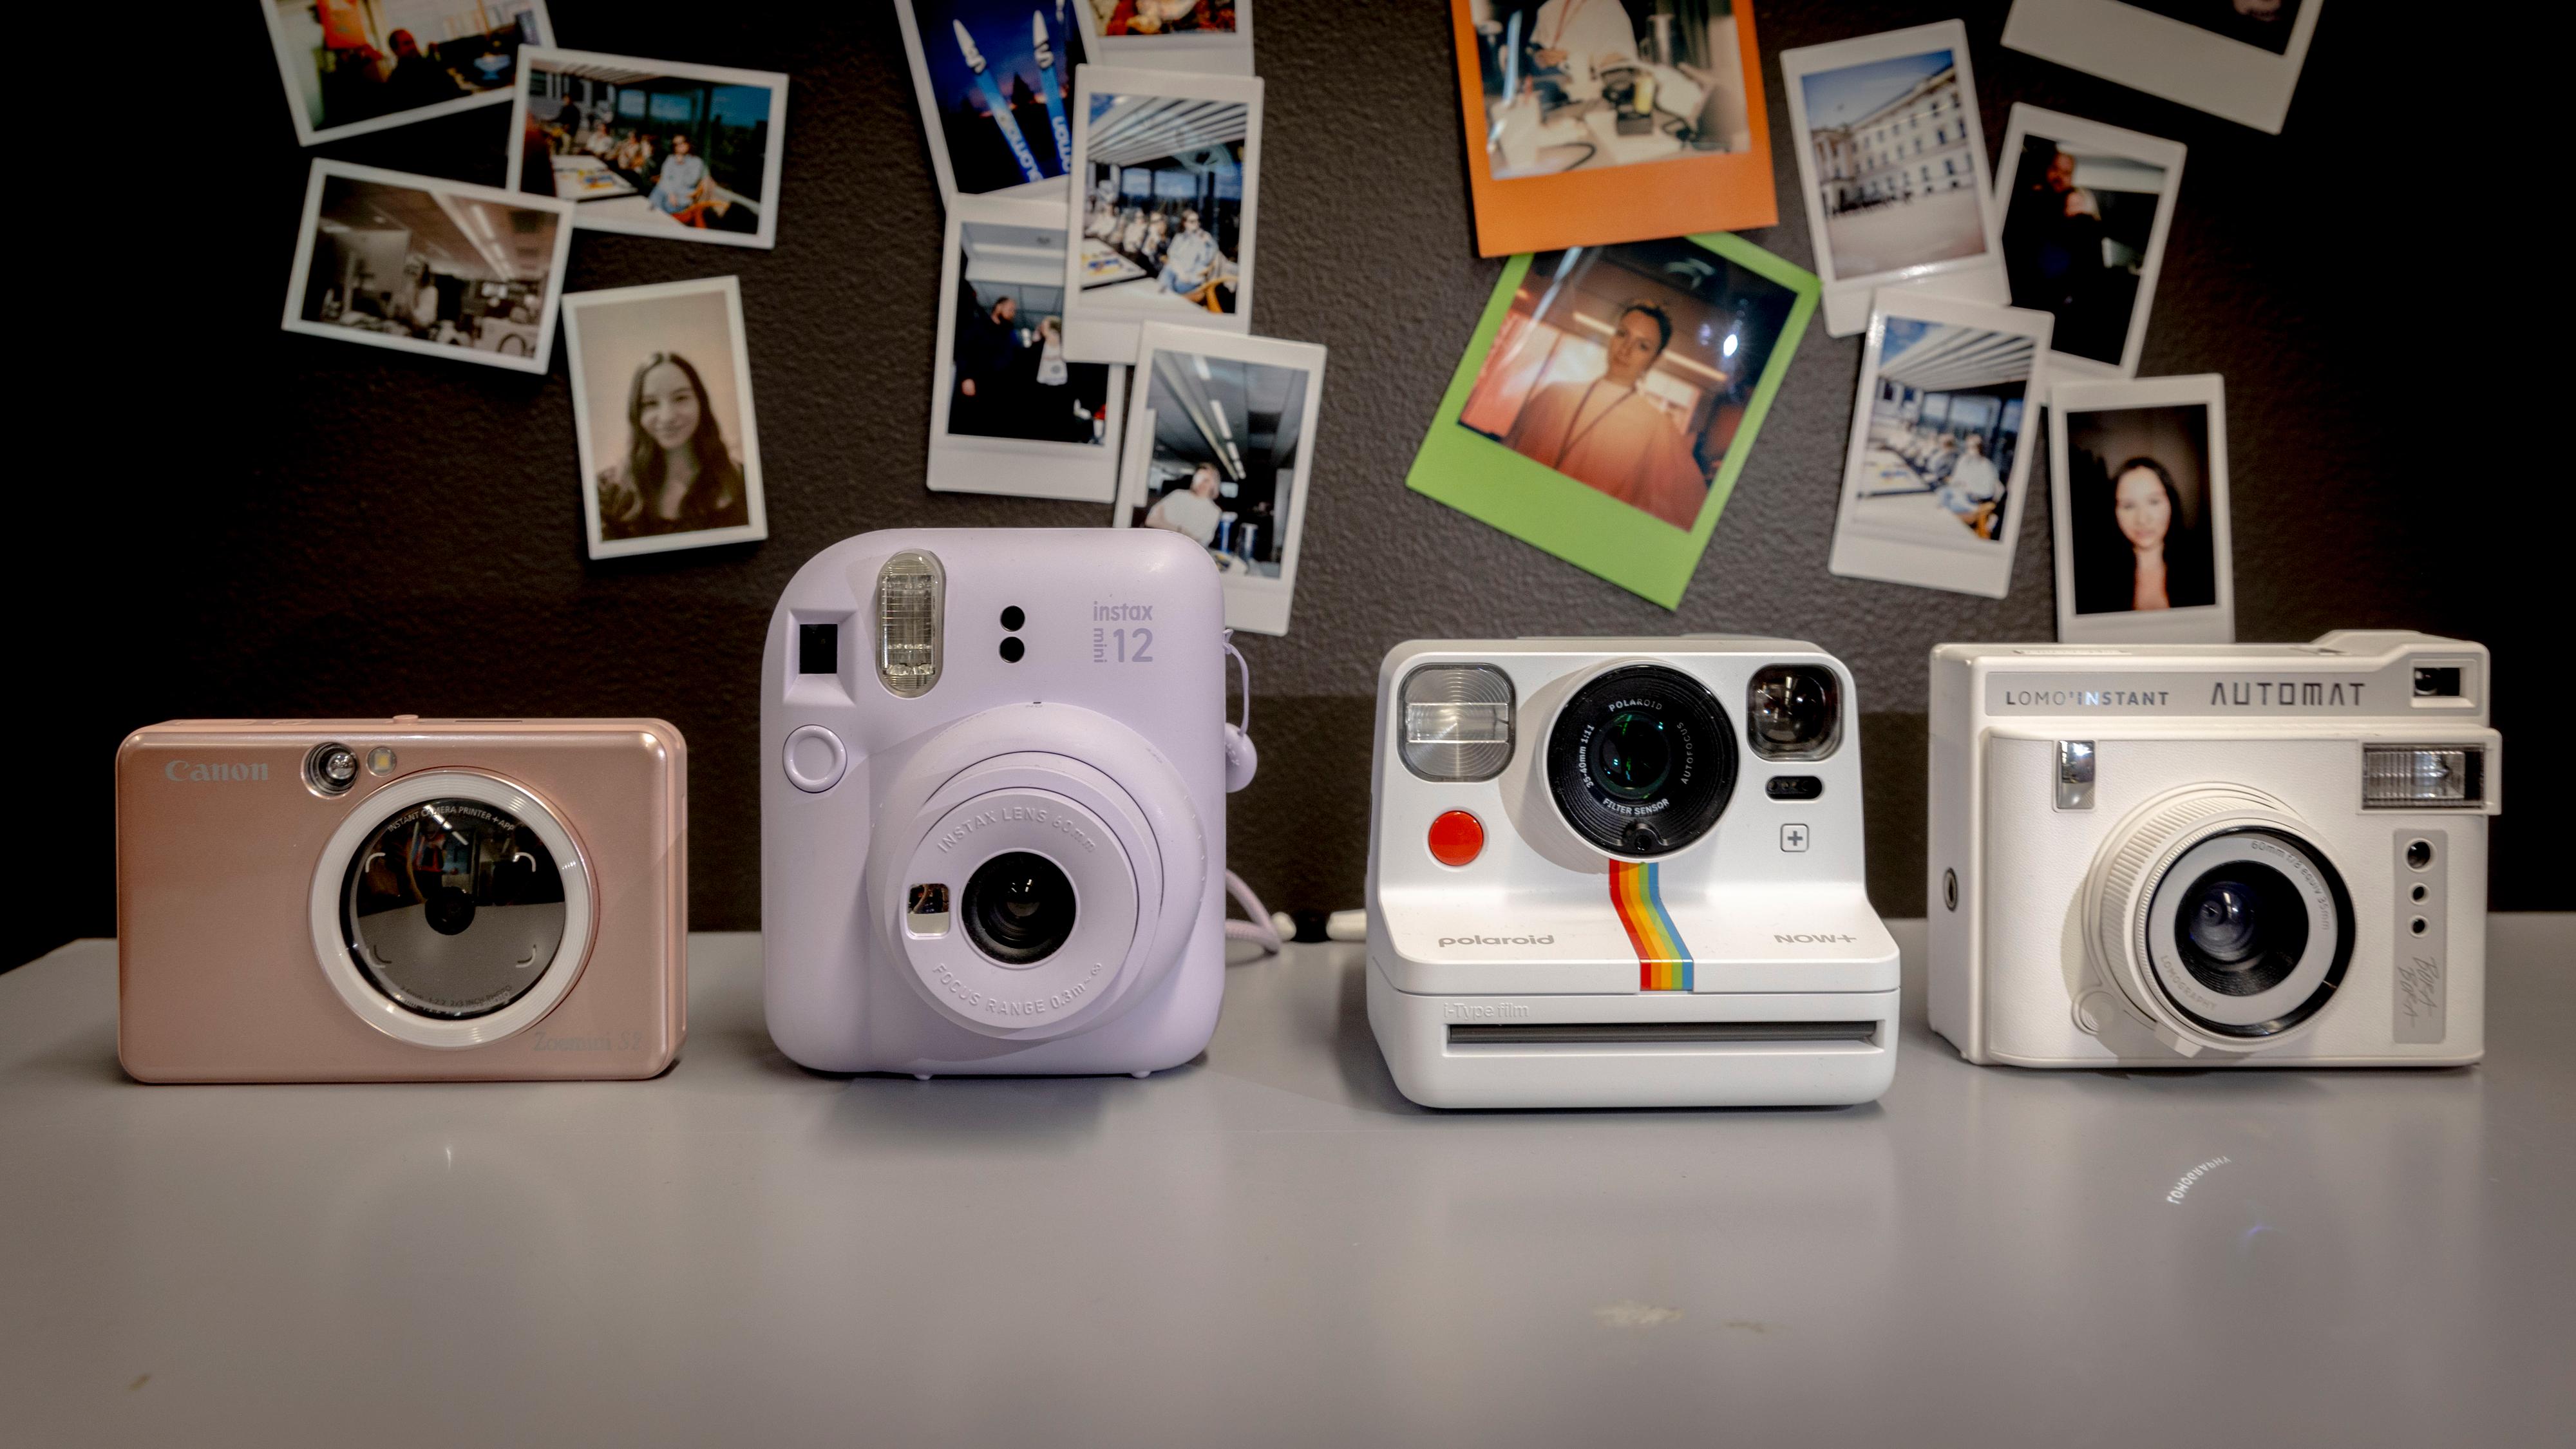 Av kameraene i testen er det Polaroid (nummer to fra høyre) som tar de største bildene. Resten er relativt like i størrelsen, og kameraet fra Lomography bruker også samme papir som Instax-kameraet til Fujifilm. 